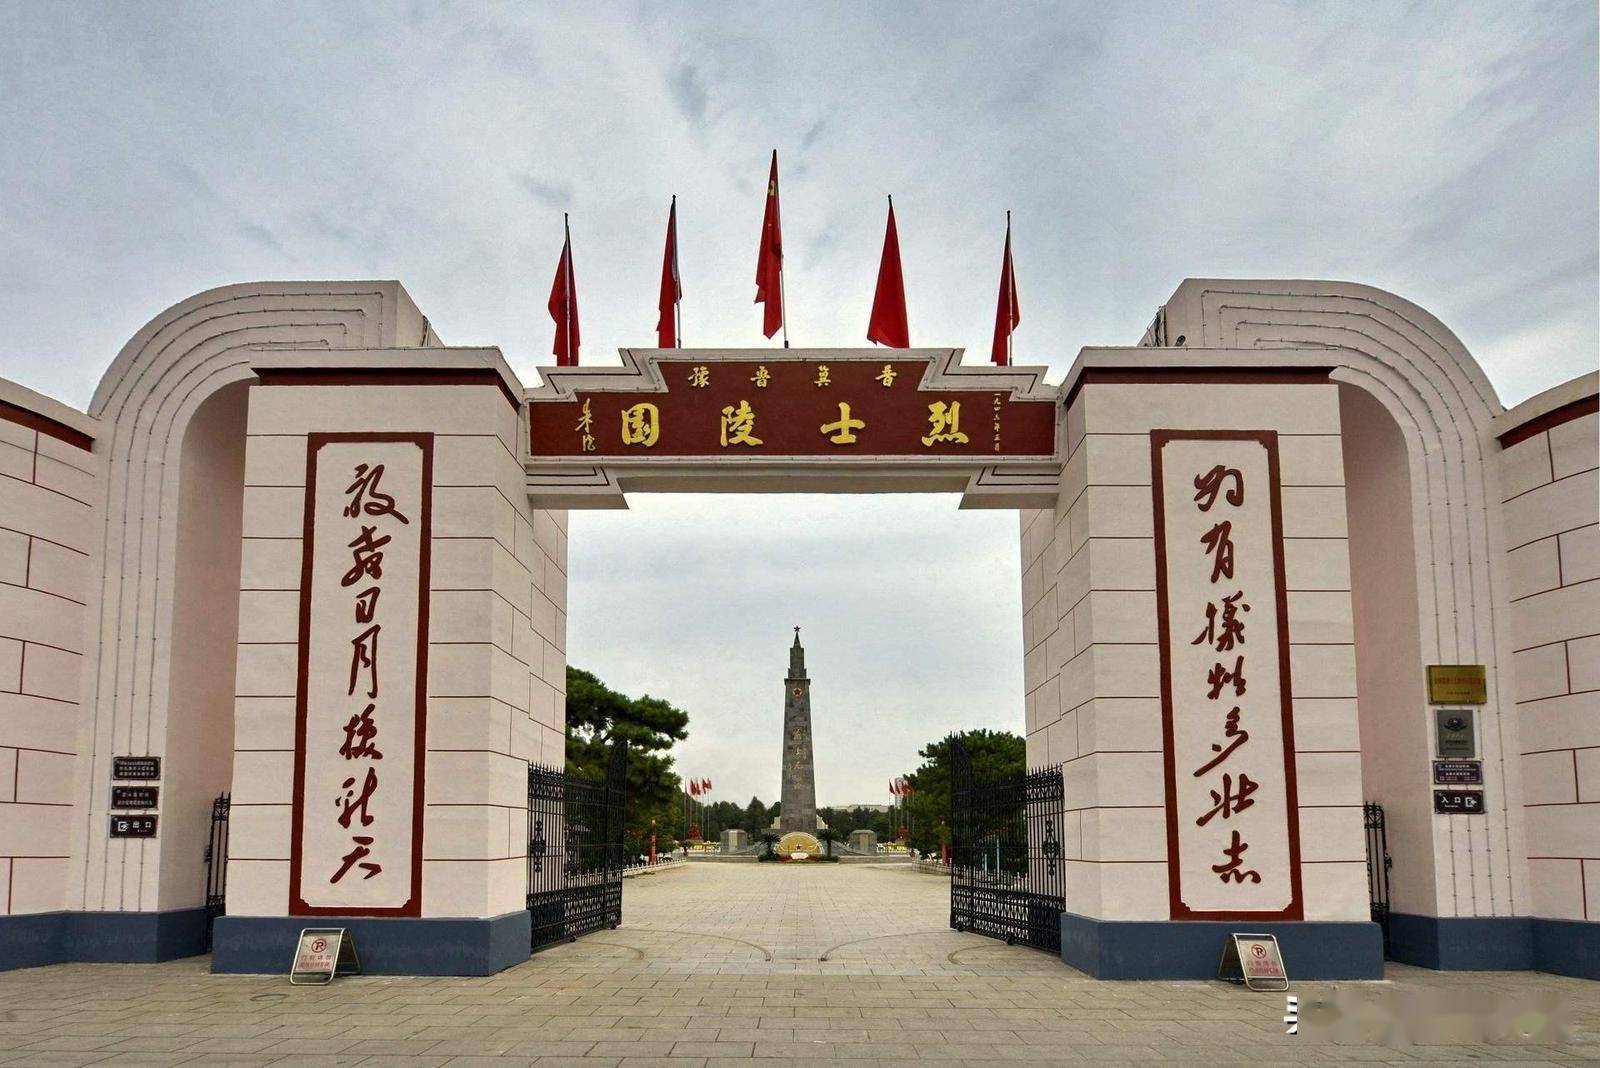 晋冀鲁豫烈士陵园——打造独具邯郸特色的新红色地标